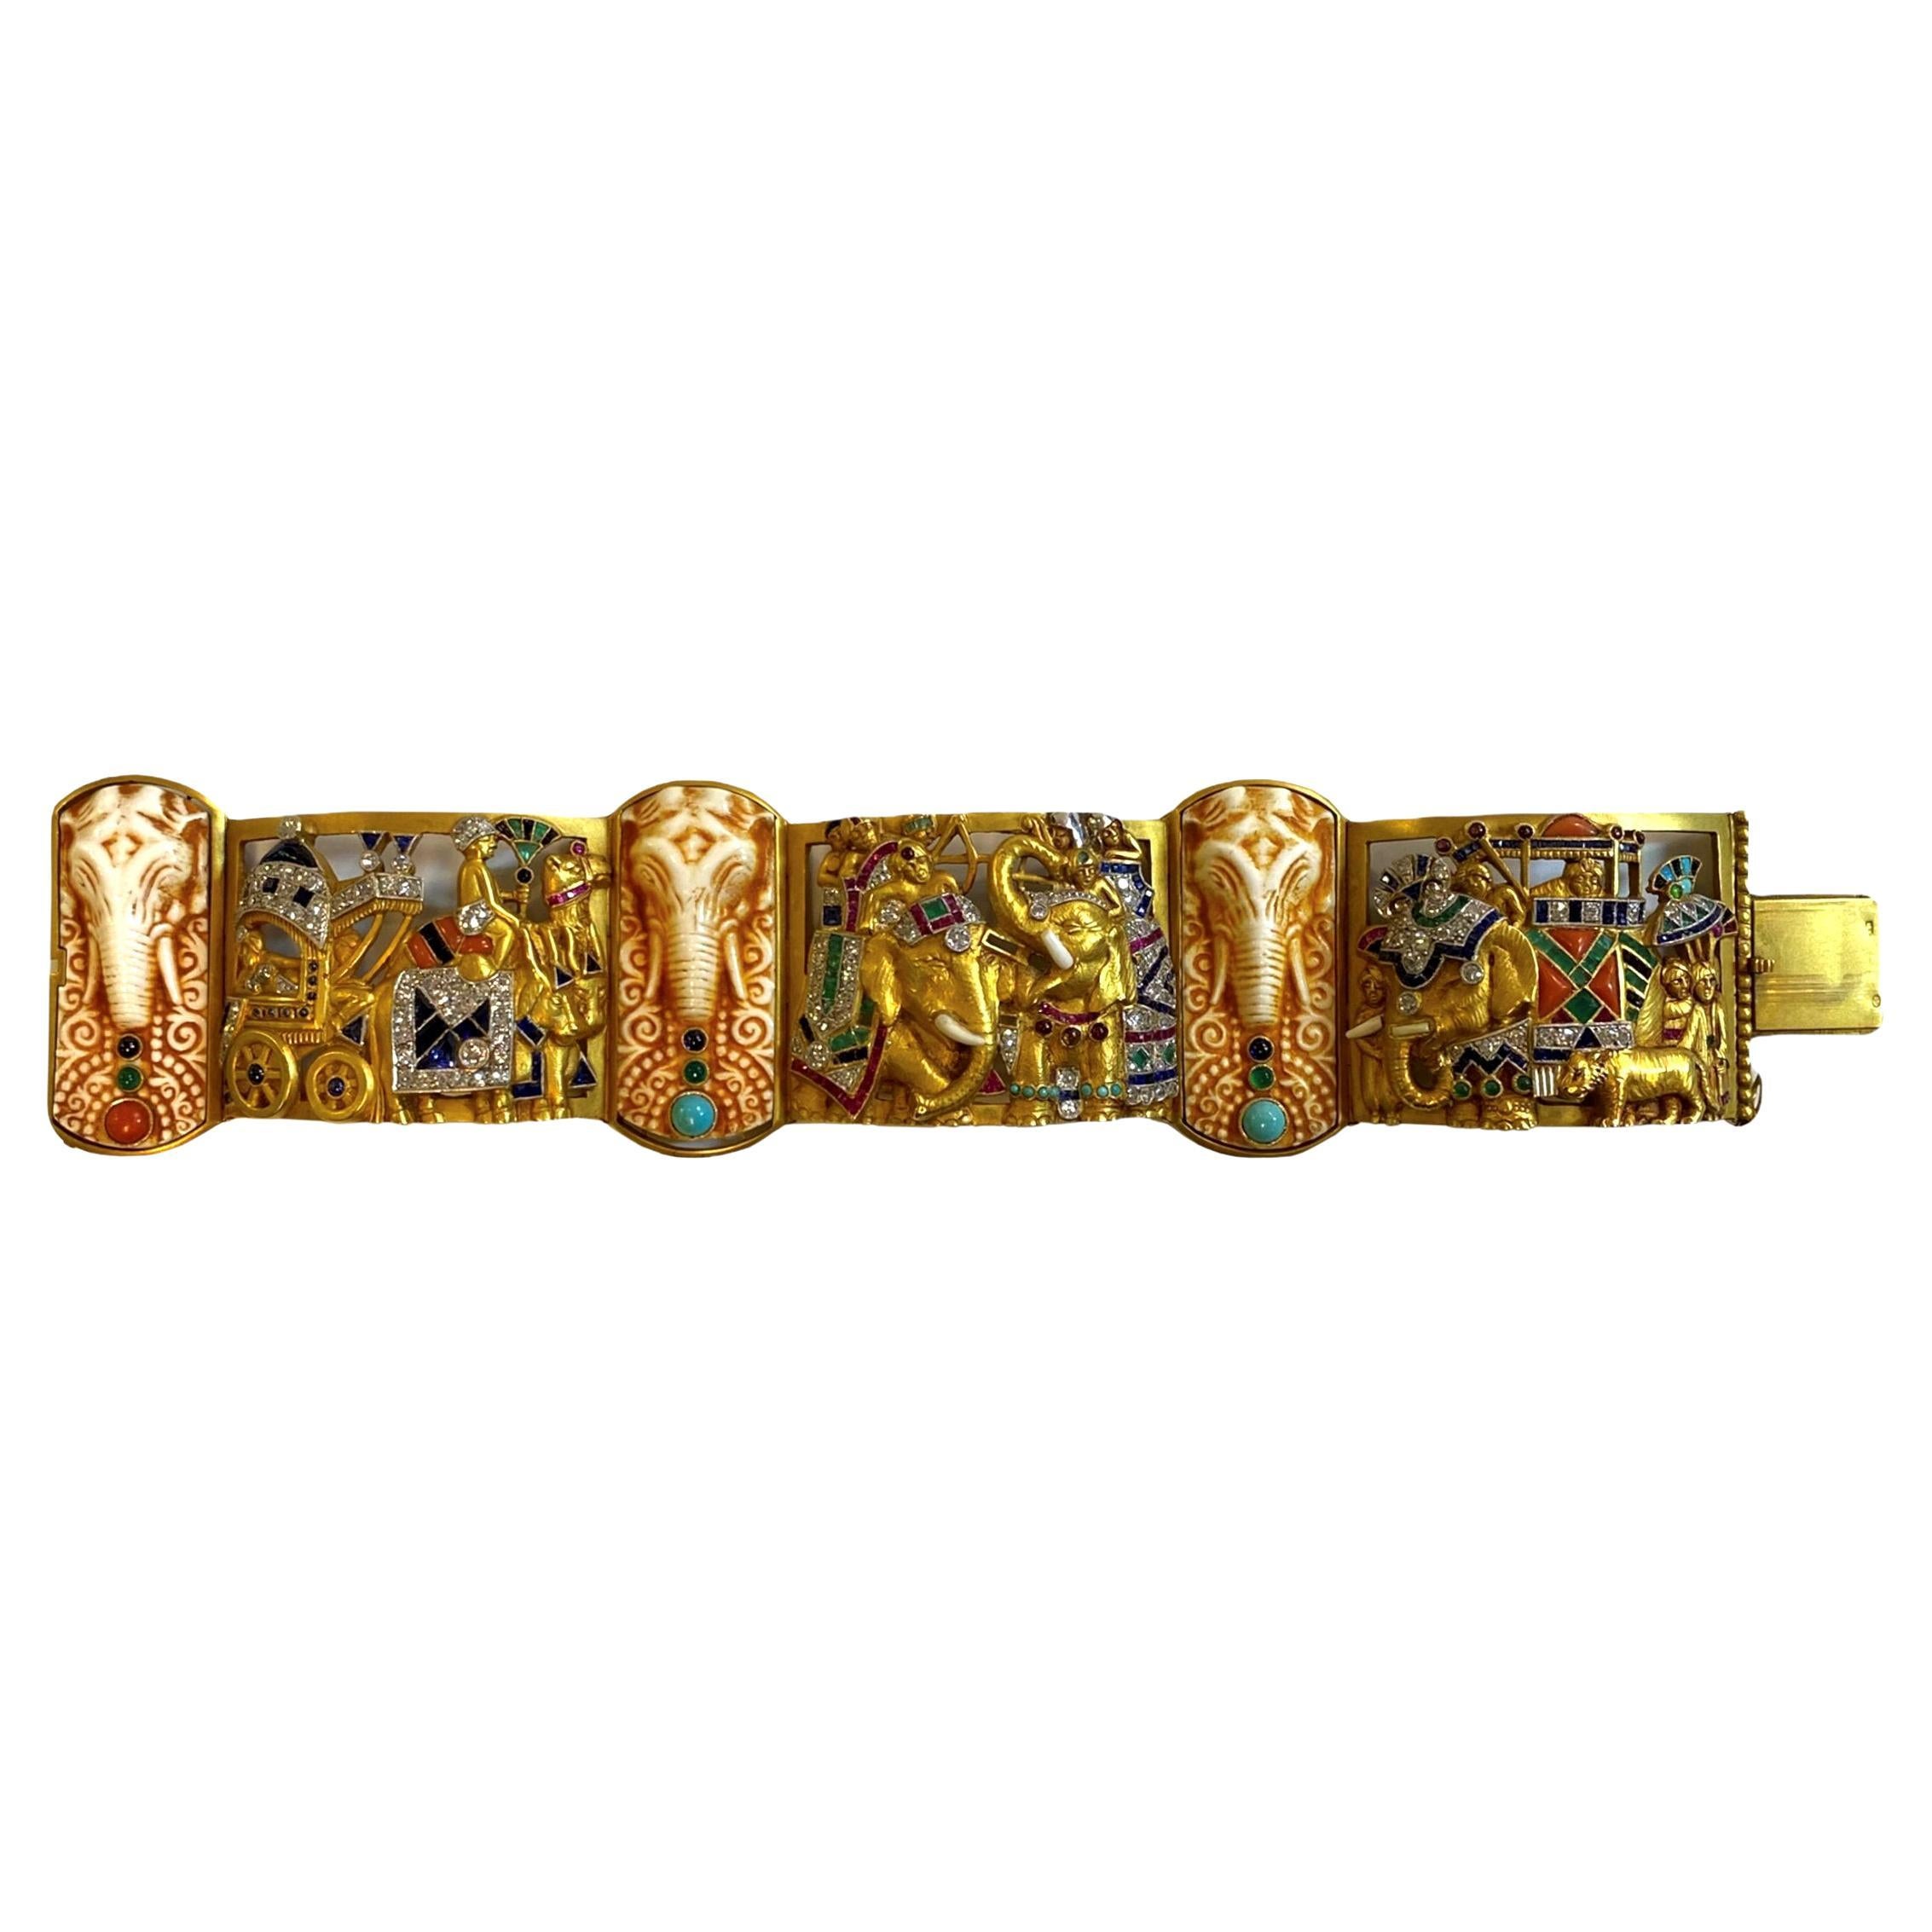 Unser außergewöhnliches Armband aus 18-karätigem Gold, mit Edelsteinen und Diamanten von Fuset y Grau, um 1930, zeigt eine zeremonielle Prozession des indischen Königshauses mit Reitern in Howdahs auf Elefanten, einer von Ochsen gezogenen Kutsche